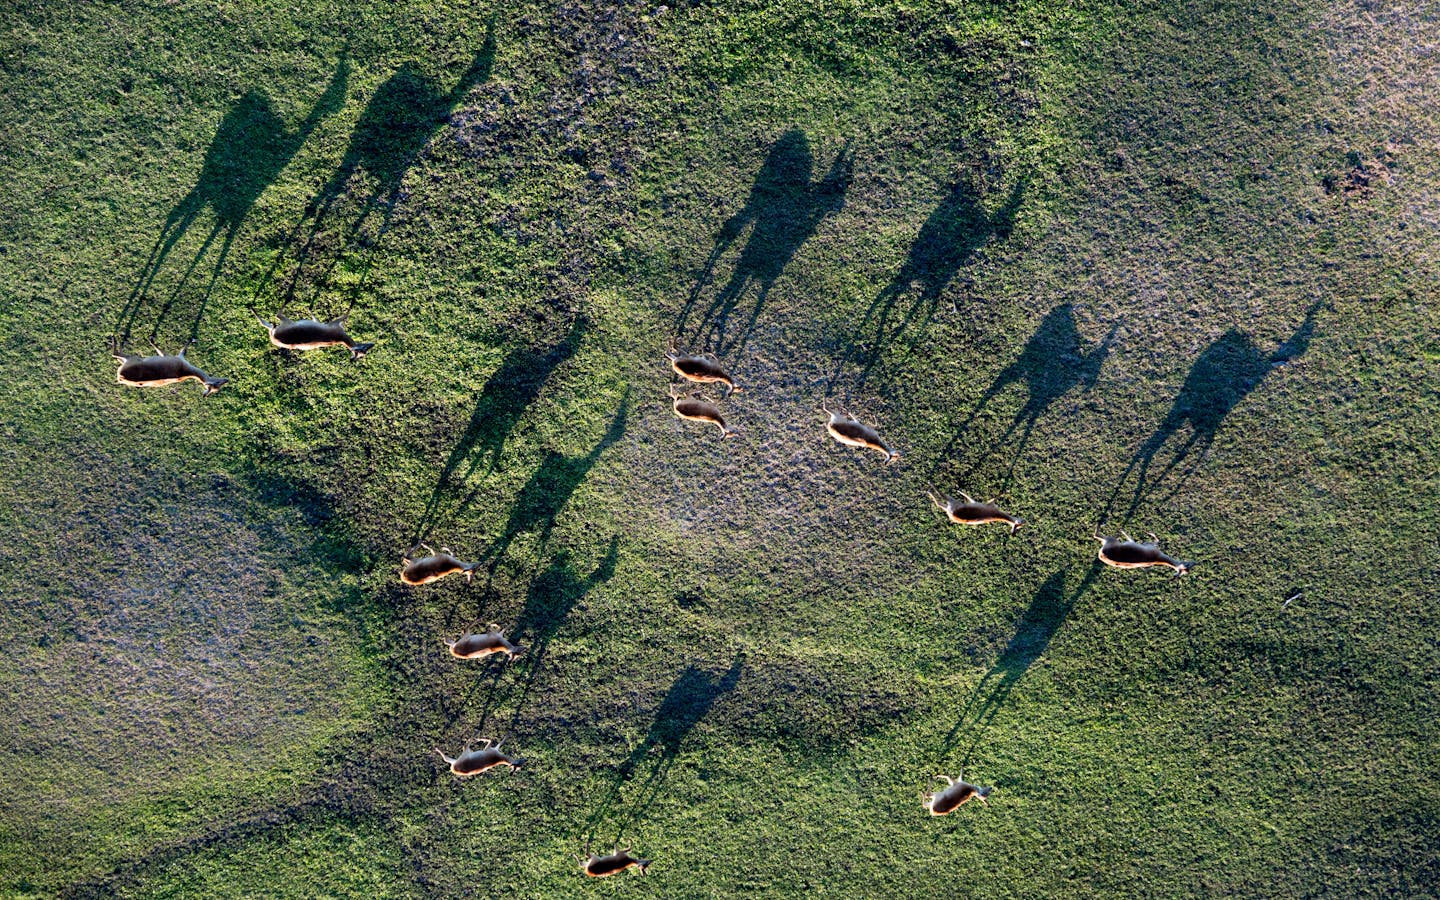 Antelope walk in the Vumbura Plains, Okavango Delta, Botswana.